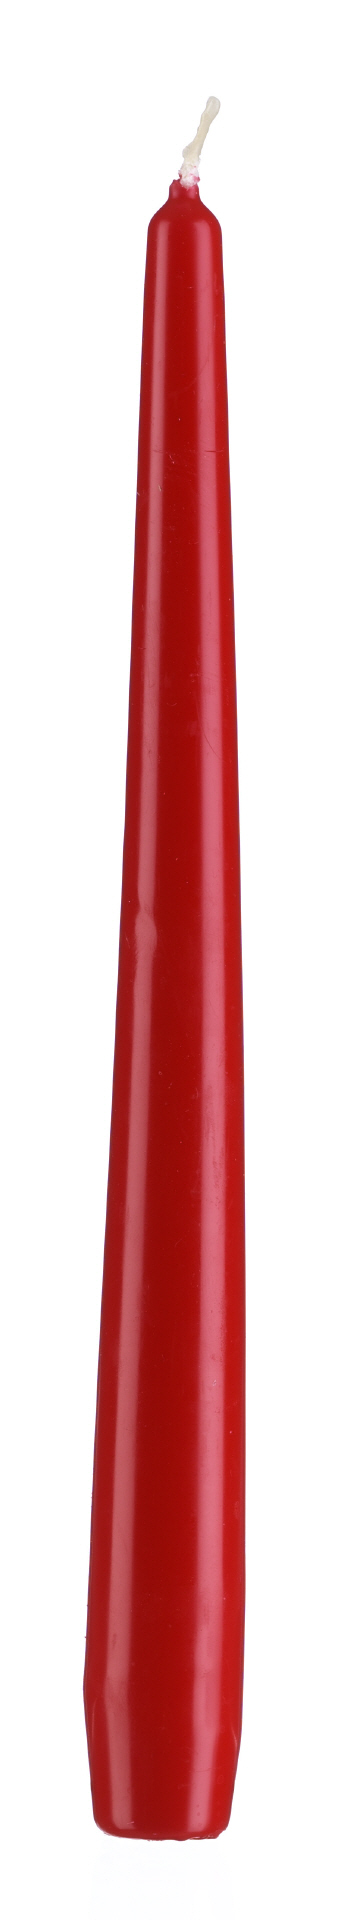 50 Stück Spitzkerzen Orig.Verp. rot 245x23mm Kerzen Leuchterkerzen 